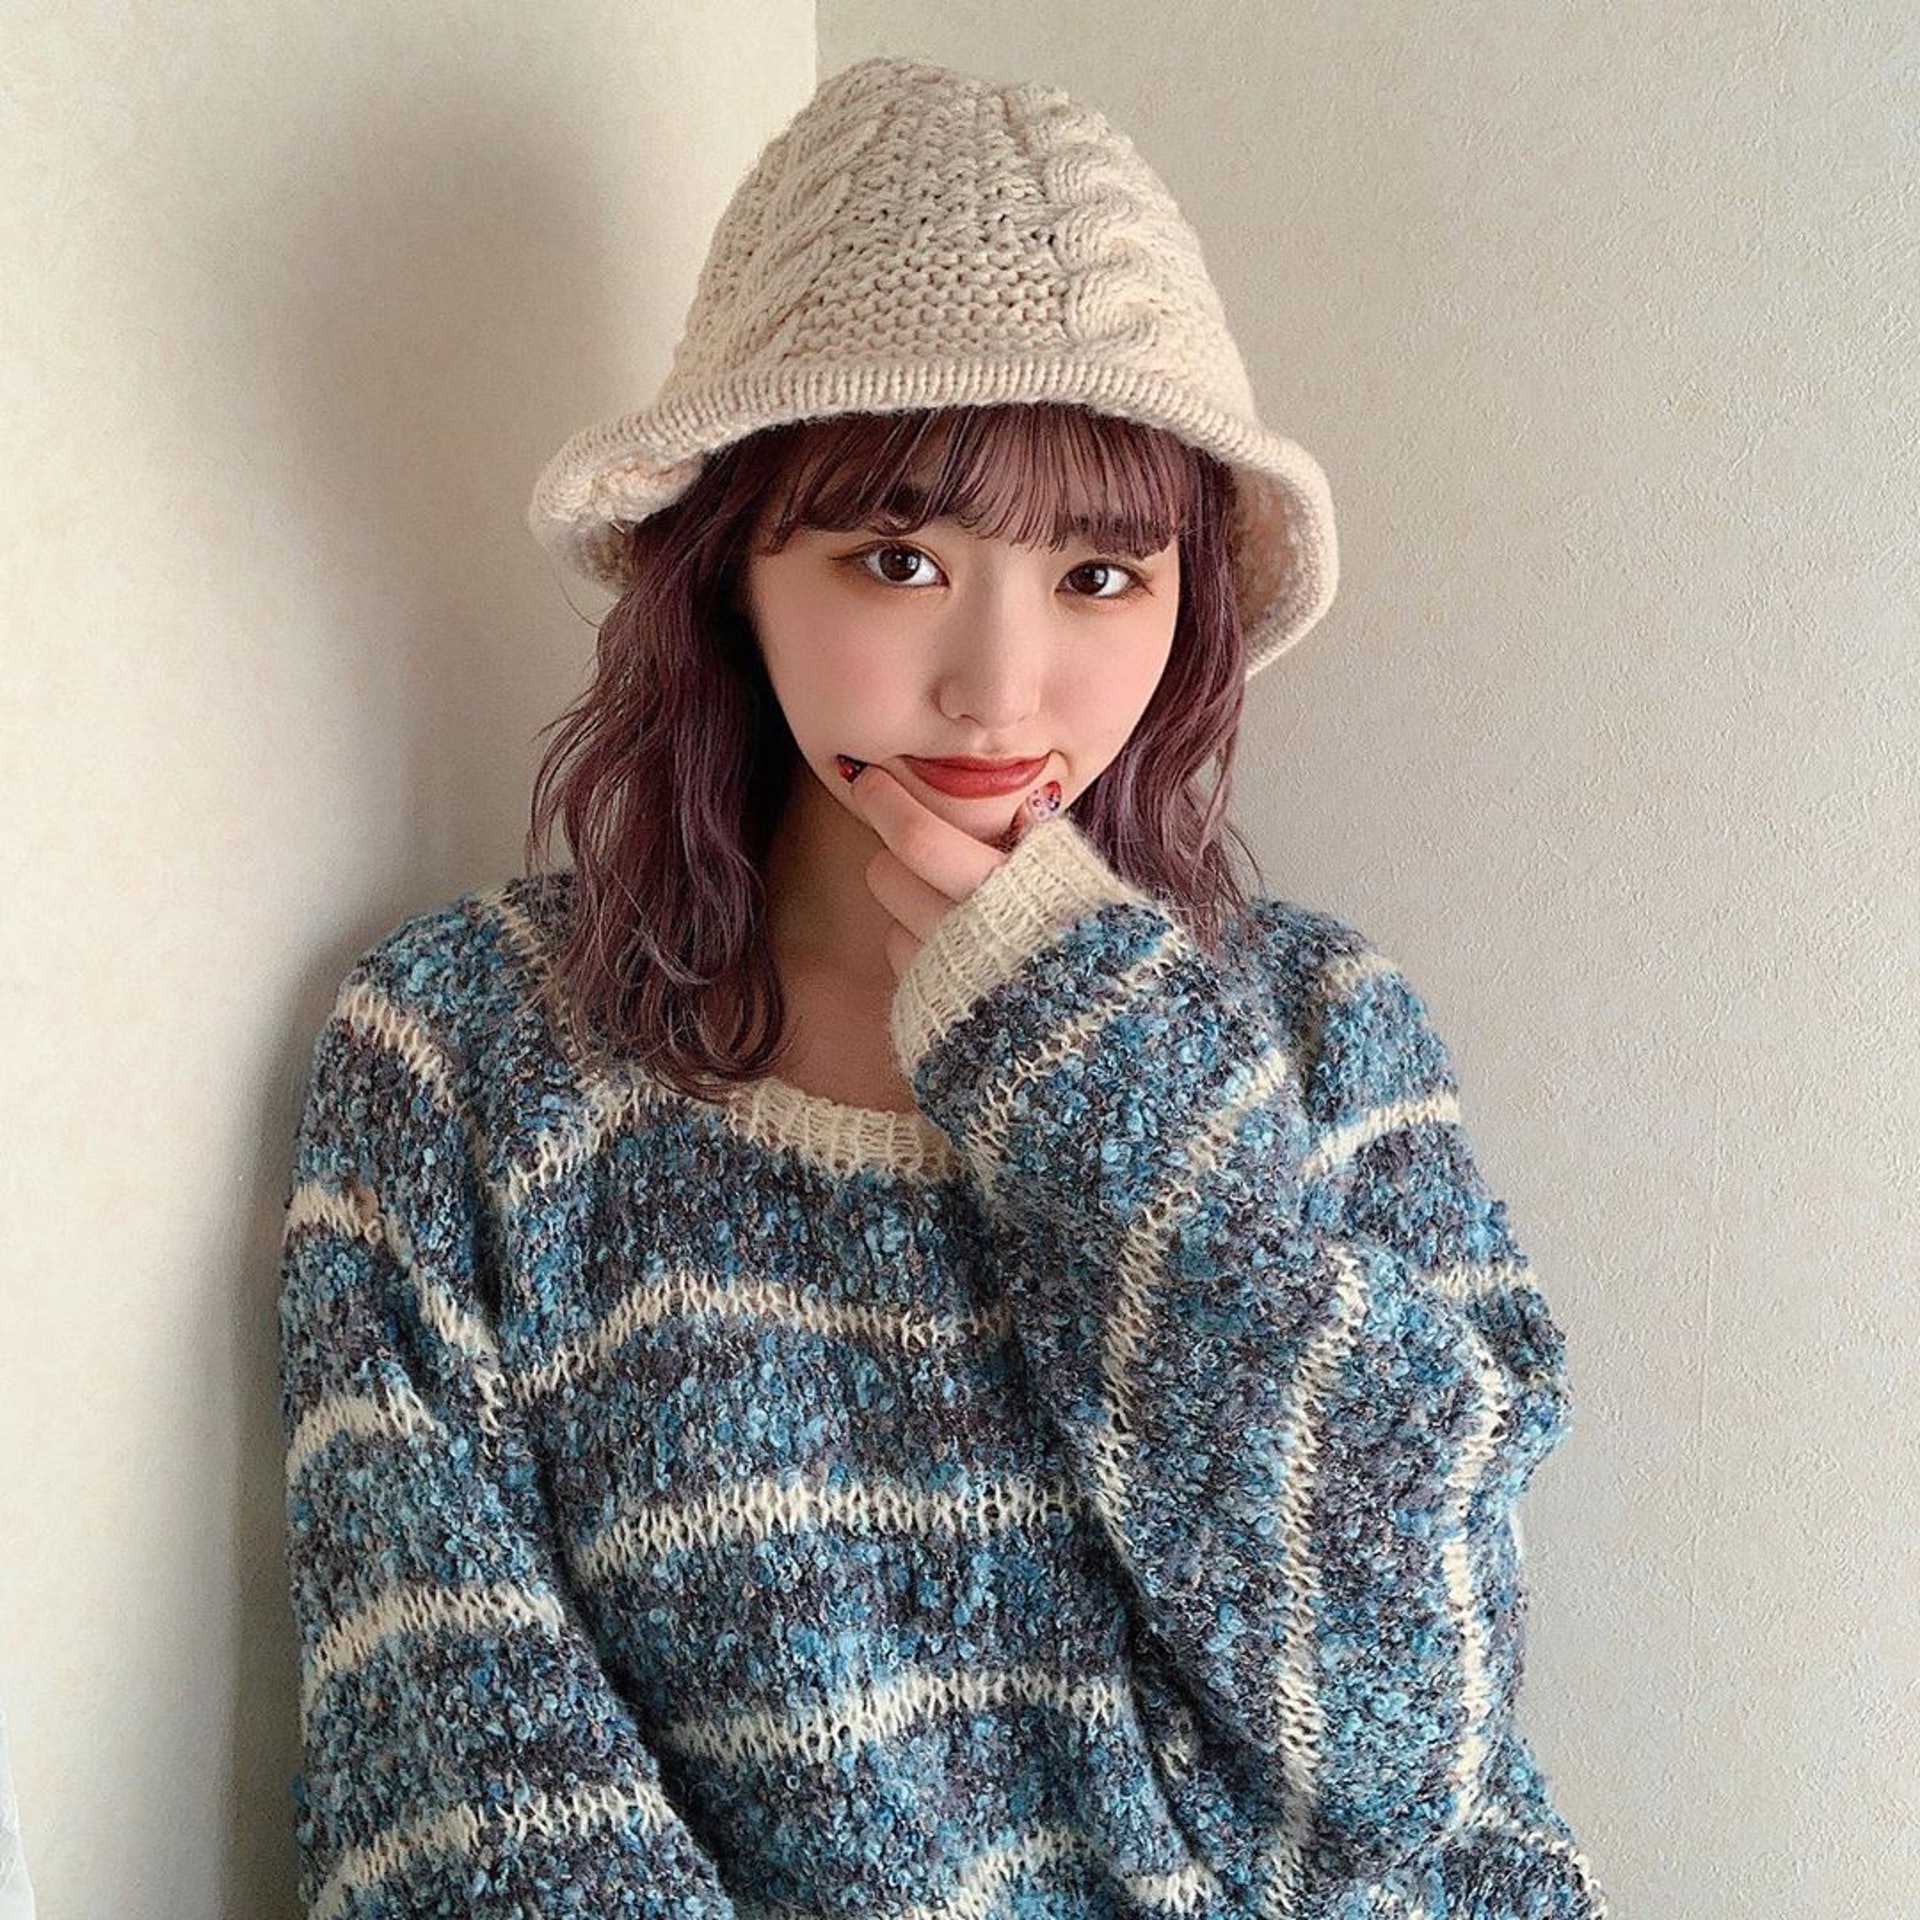 日本女生Chaki喜歡與人分享她的穿搭造型，更會教授重覆搭配的技巧。(__nmsk13@Instagram)